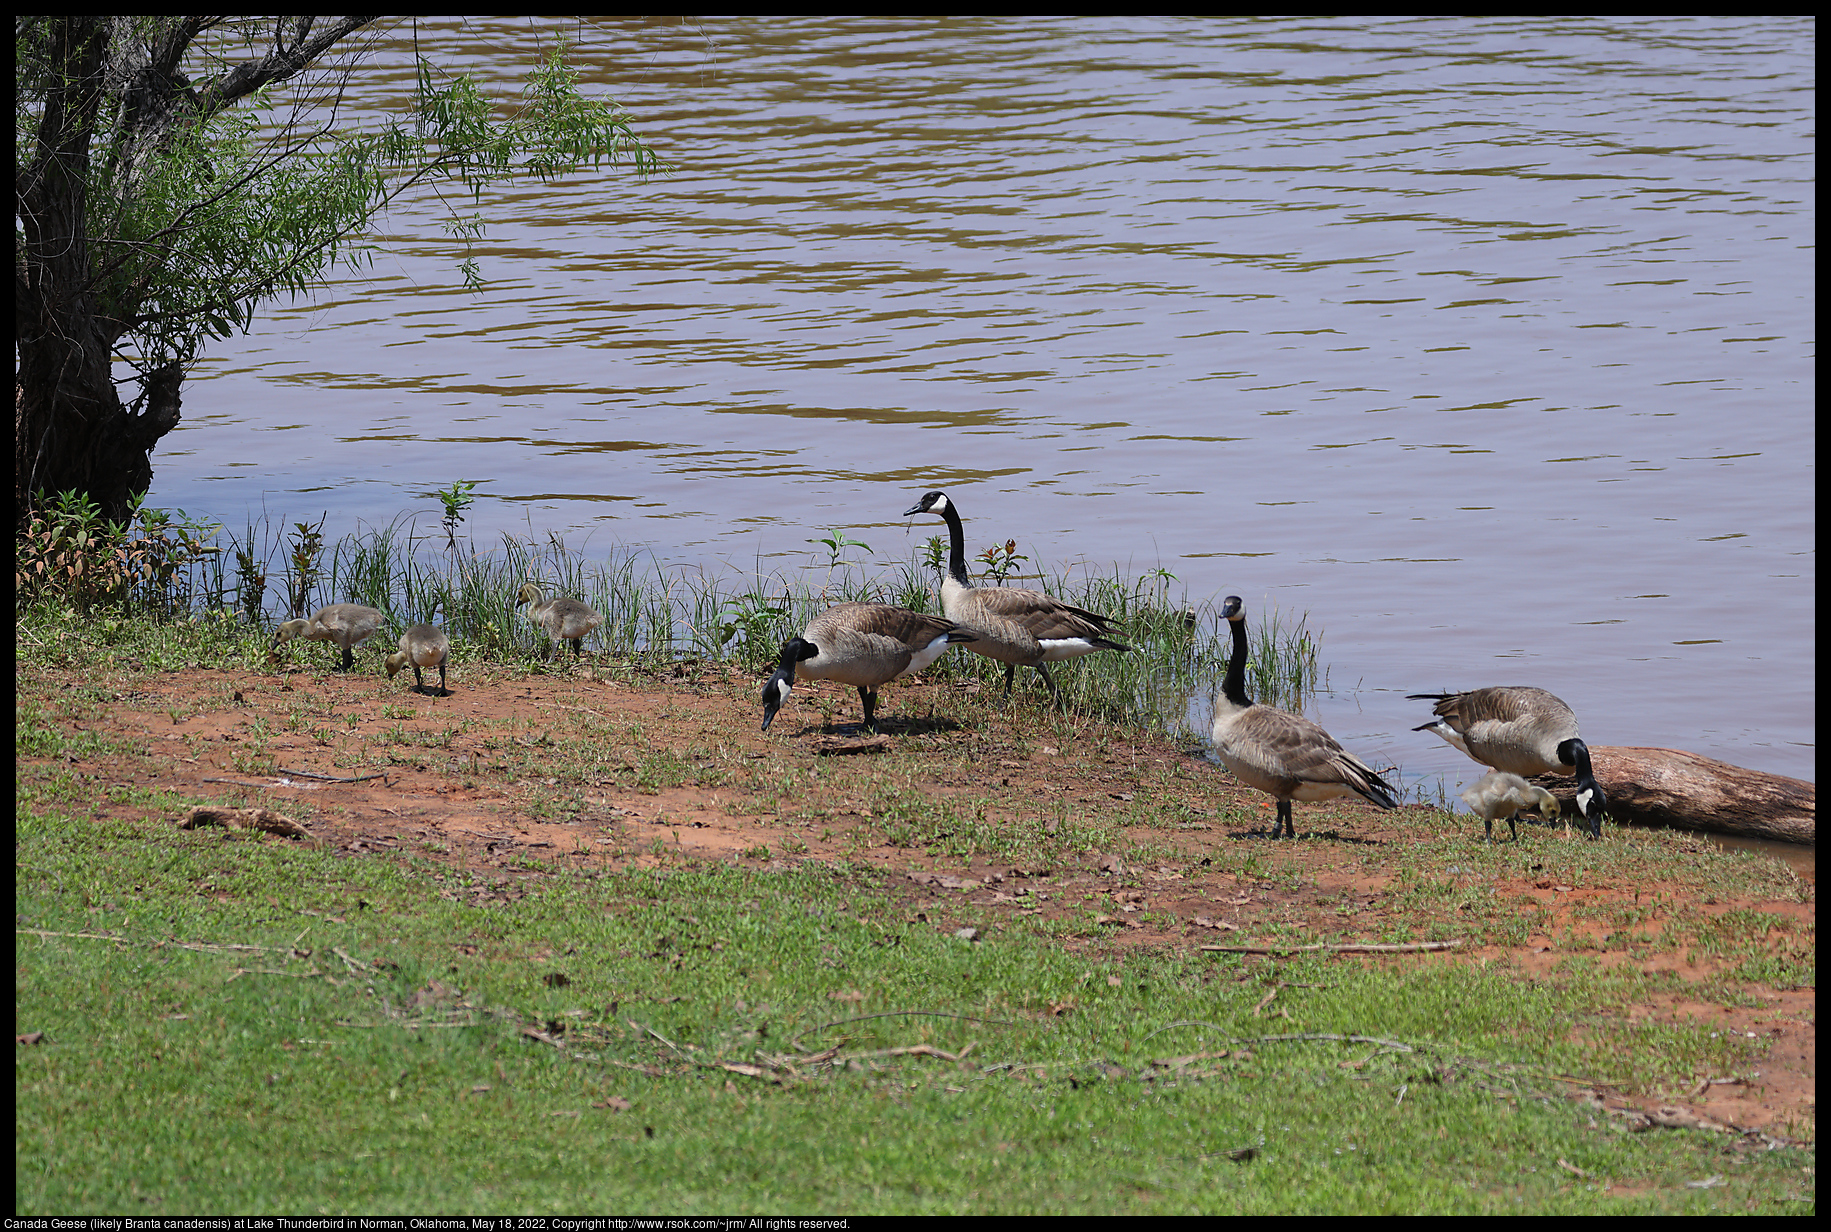 Canada Geese (likely Branta canadensis) at Lake Thunderbird in Norman, Oklahoma, May 18, 2022